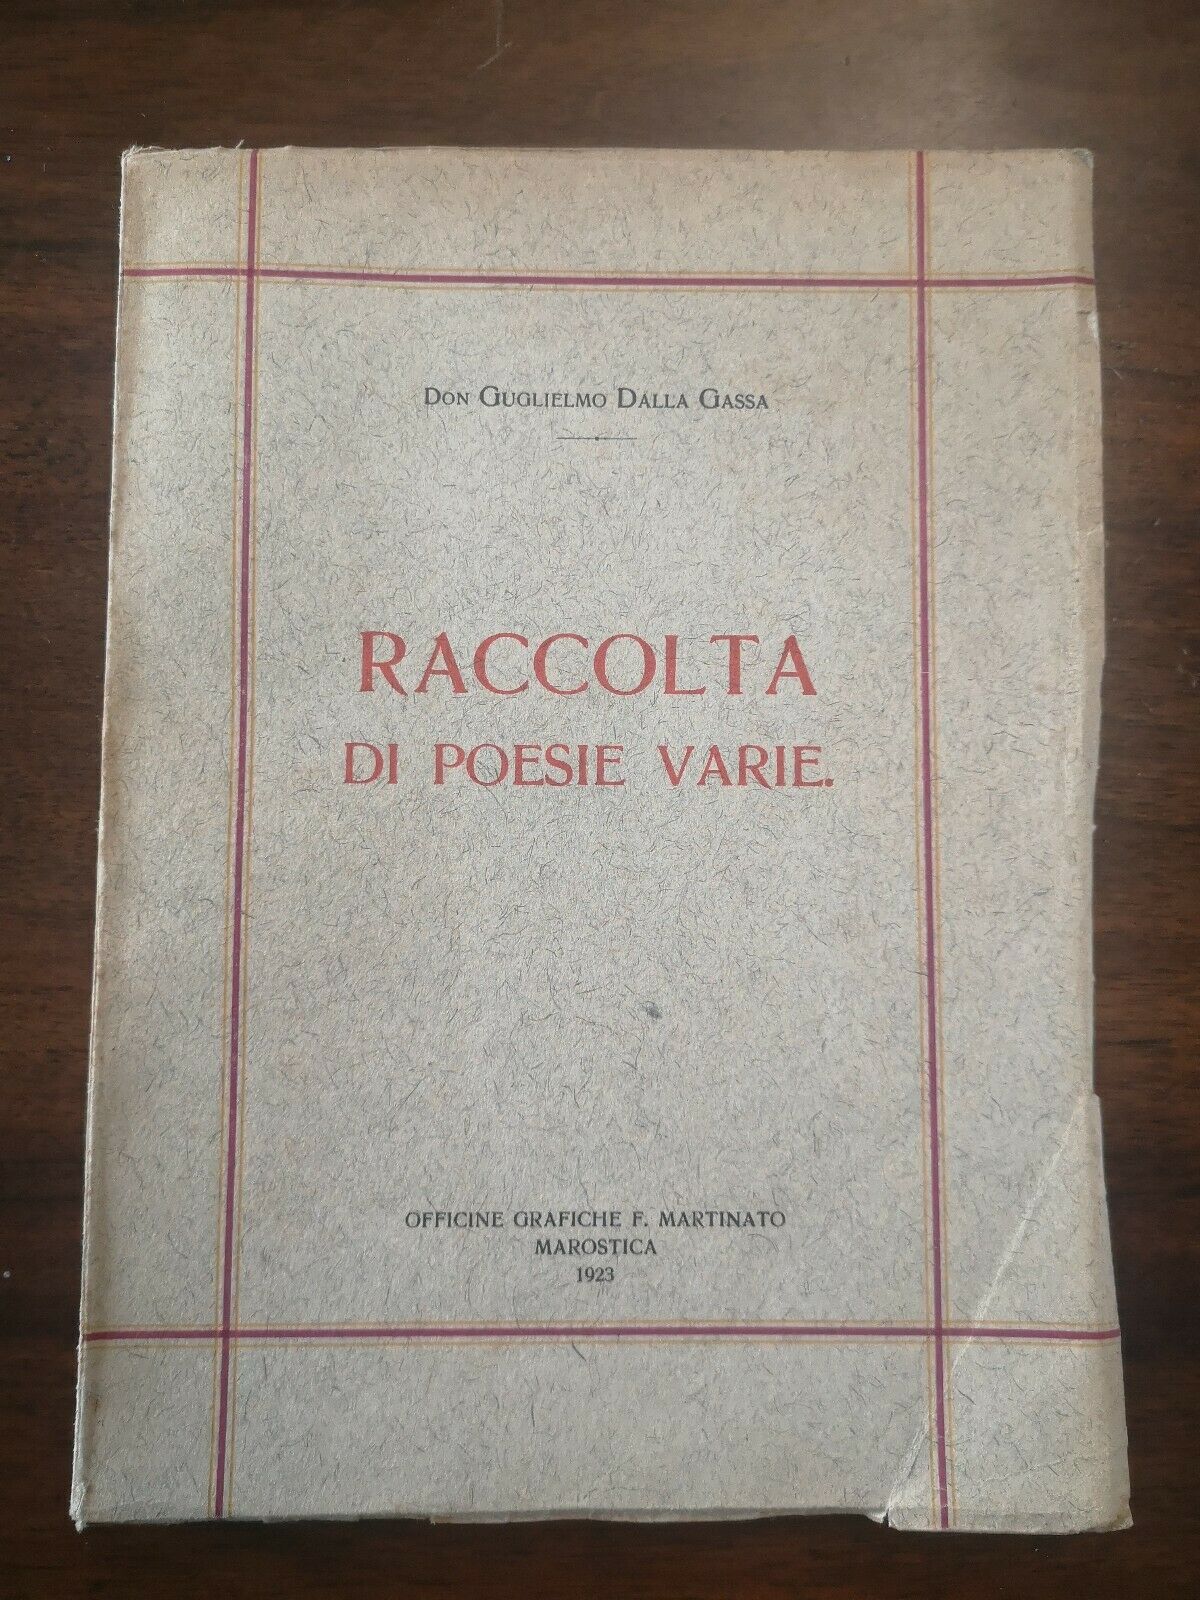 Don Guglielmo Dalla Gassa RACCOLTA DI POESIE VARIE 1923 Marostica Officine Grafiche F. Martinato